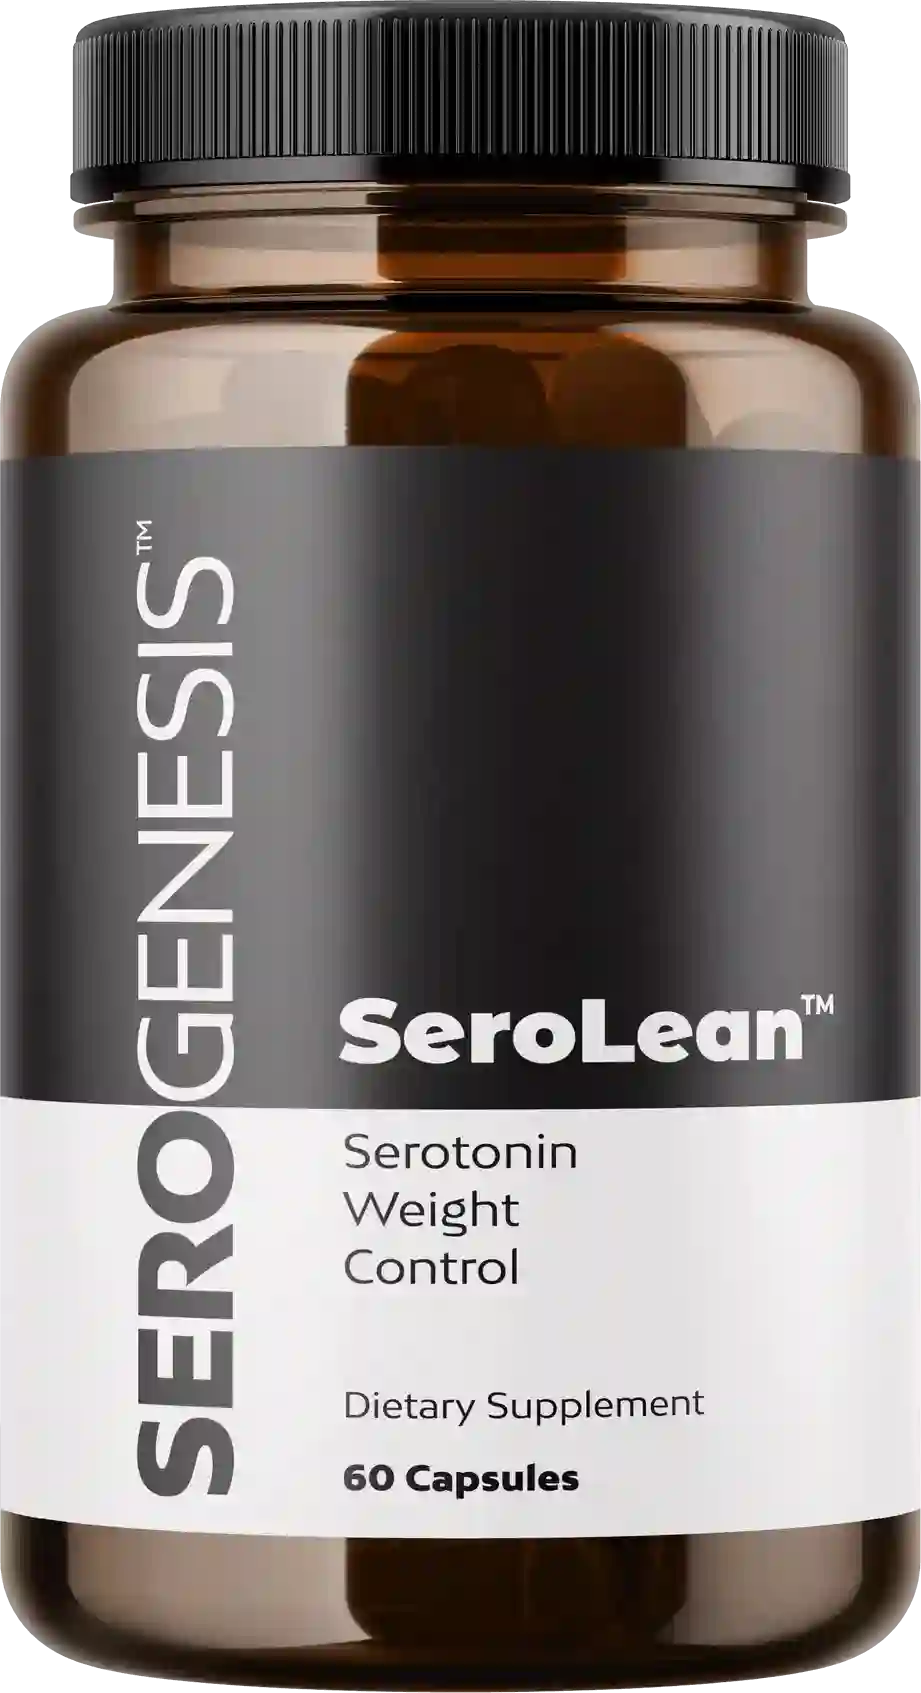 1 month 1 bottle - Serolean 